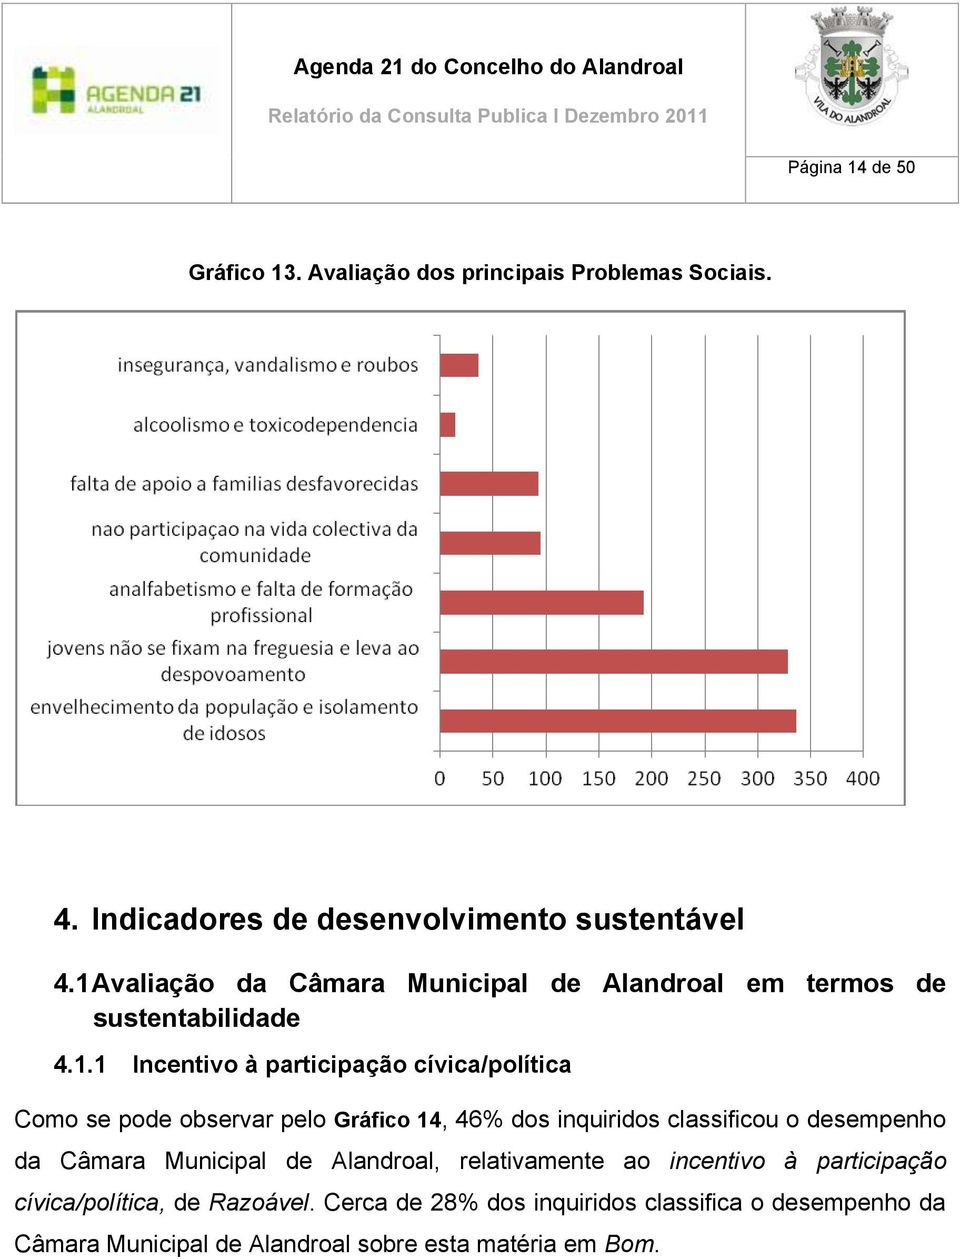 observar pelo Gráfico 14, 46% dos inquiridos classificou o desempenho da Câmara Municipal de Alandroal, relativamente ao incentivo à